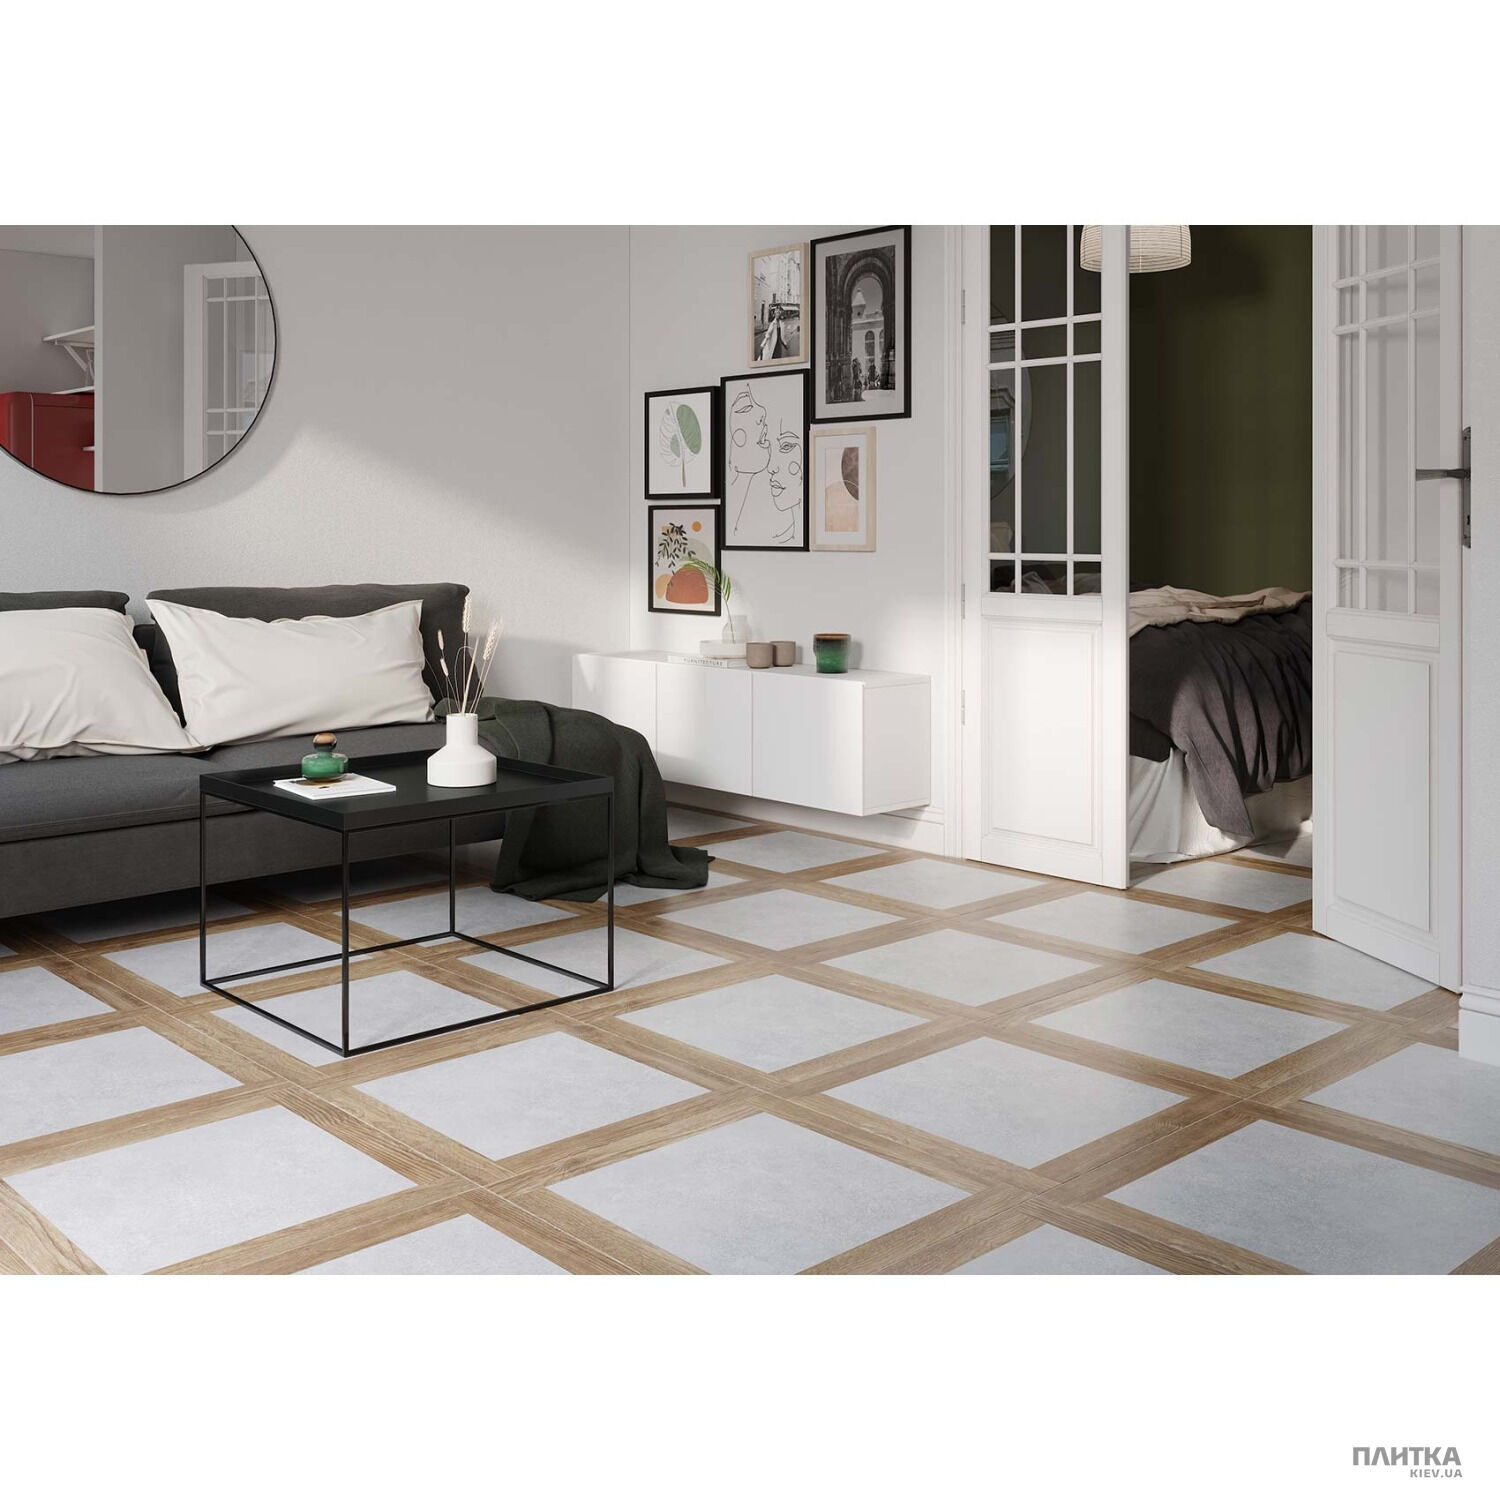 Керамогранит Golden Tile Concrete&Wood Concrete Wood серый G92510 коричневый,серый